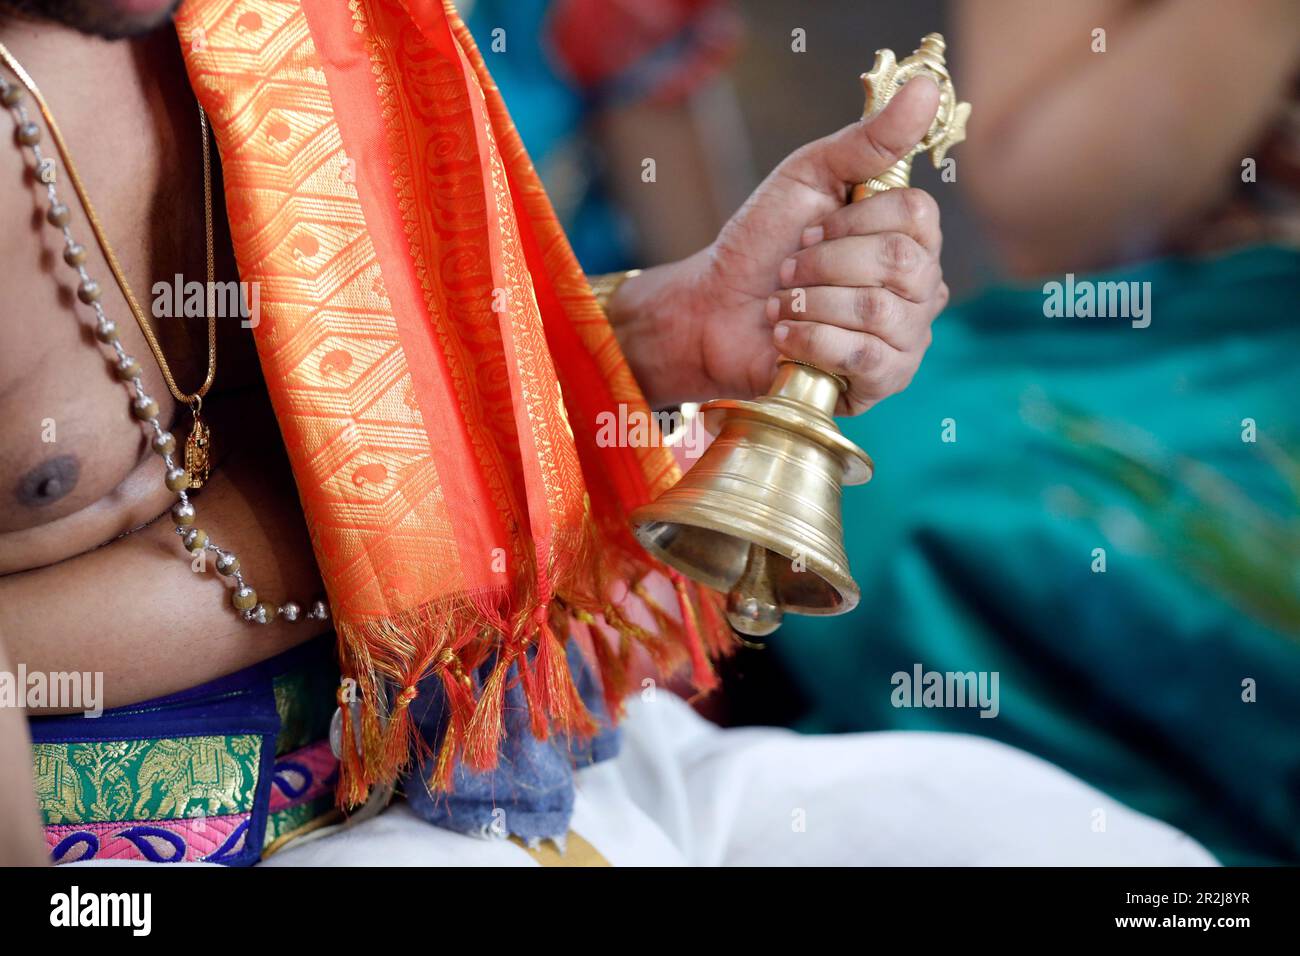 Main tenant la cloche cérémoniale, temple hindou Sri Srinivasa Perumal, prêtre hindou (Brahmin) exécutant la cérémonie et les rituels de puja, Singapour Banque D'Images